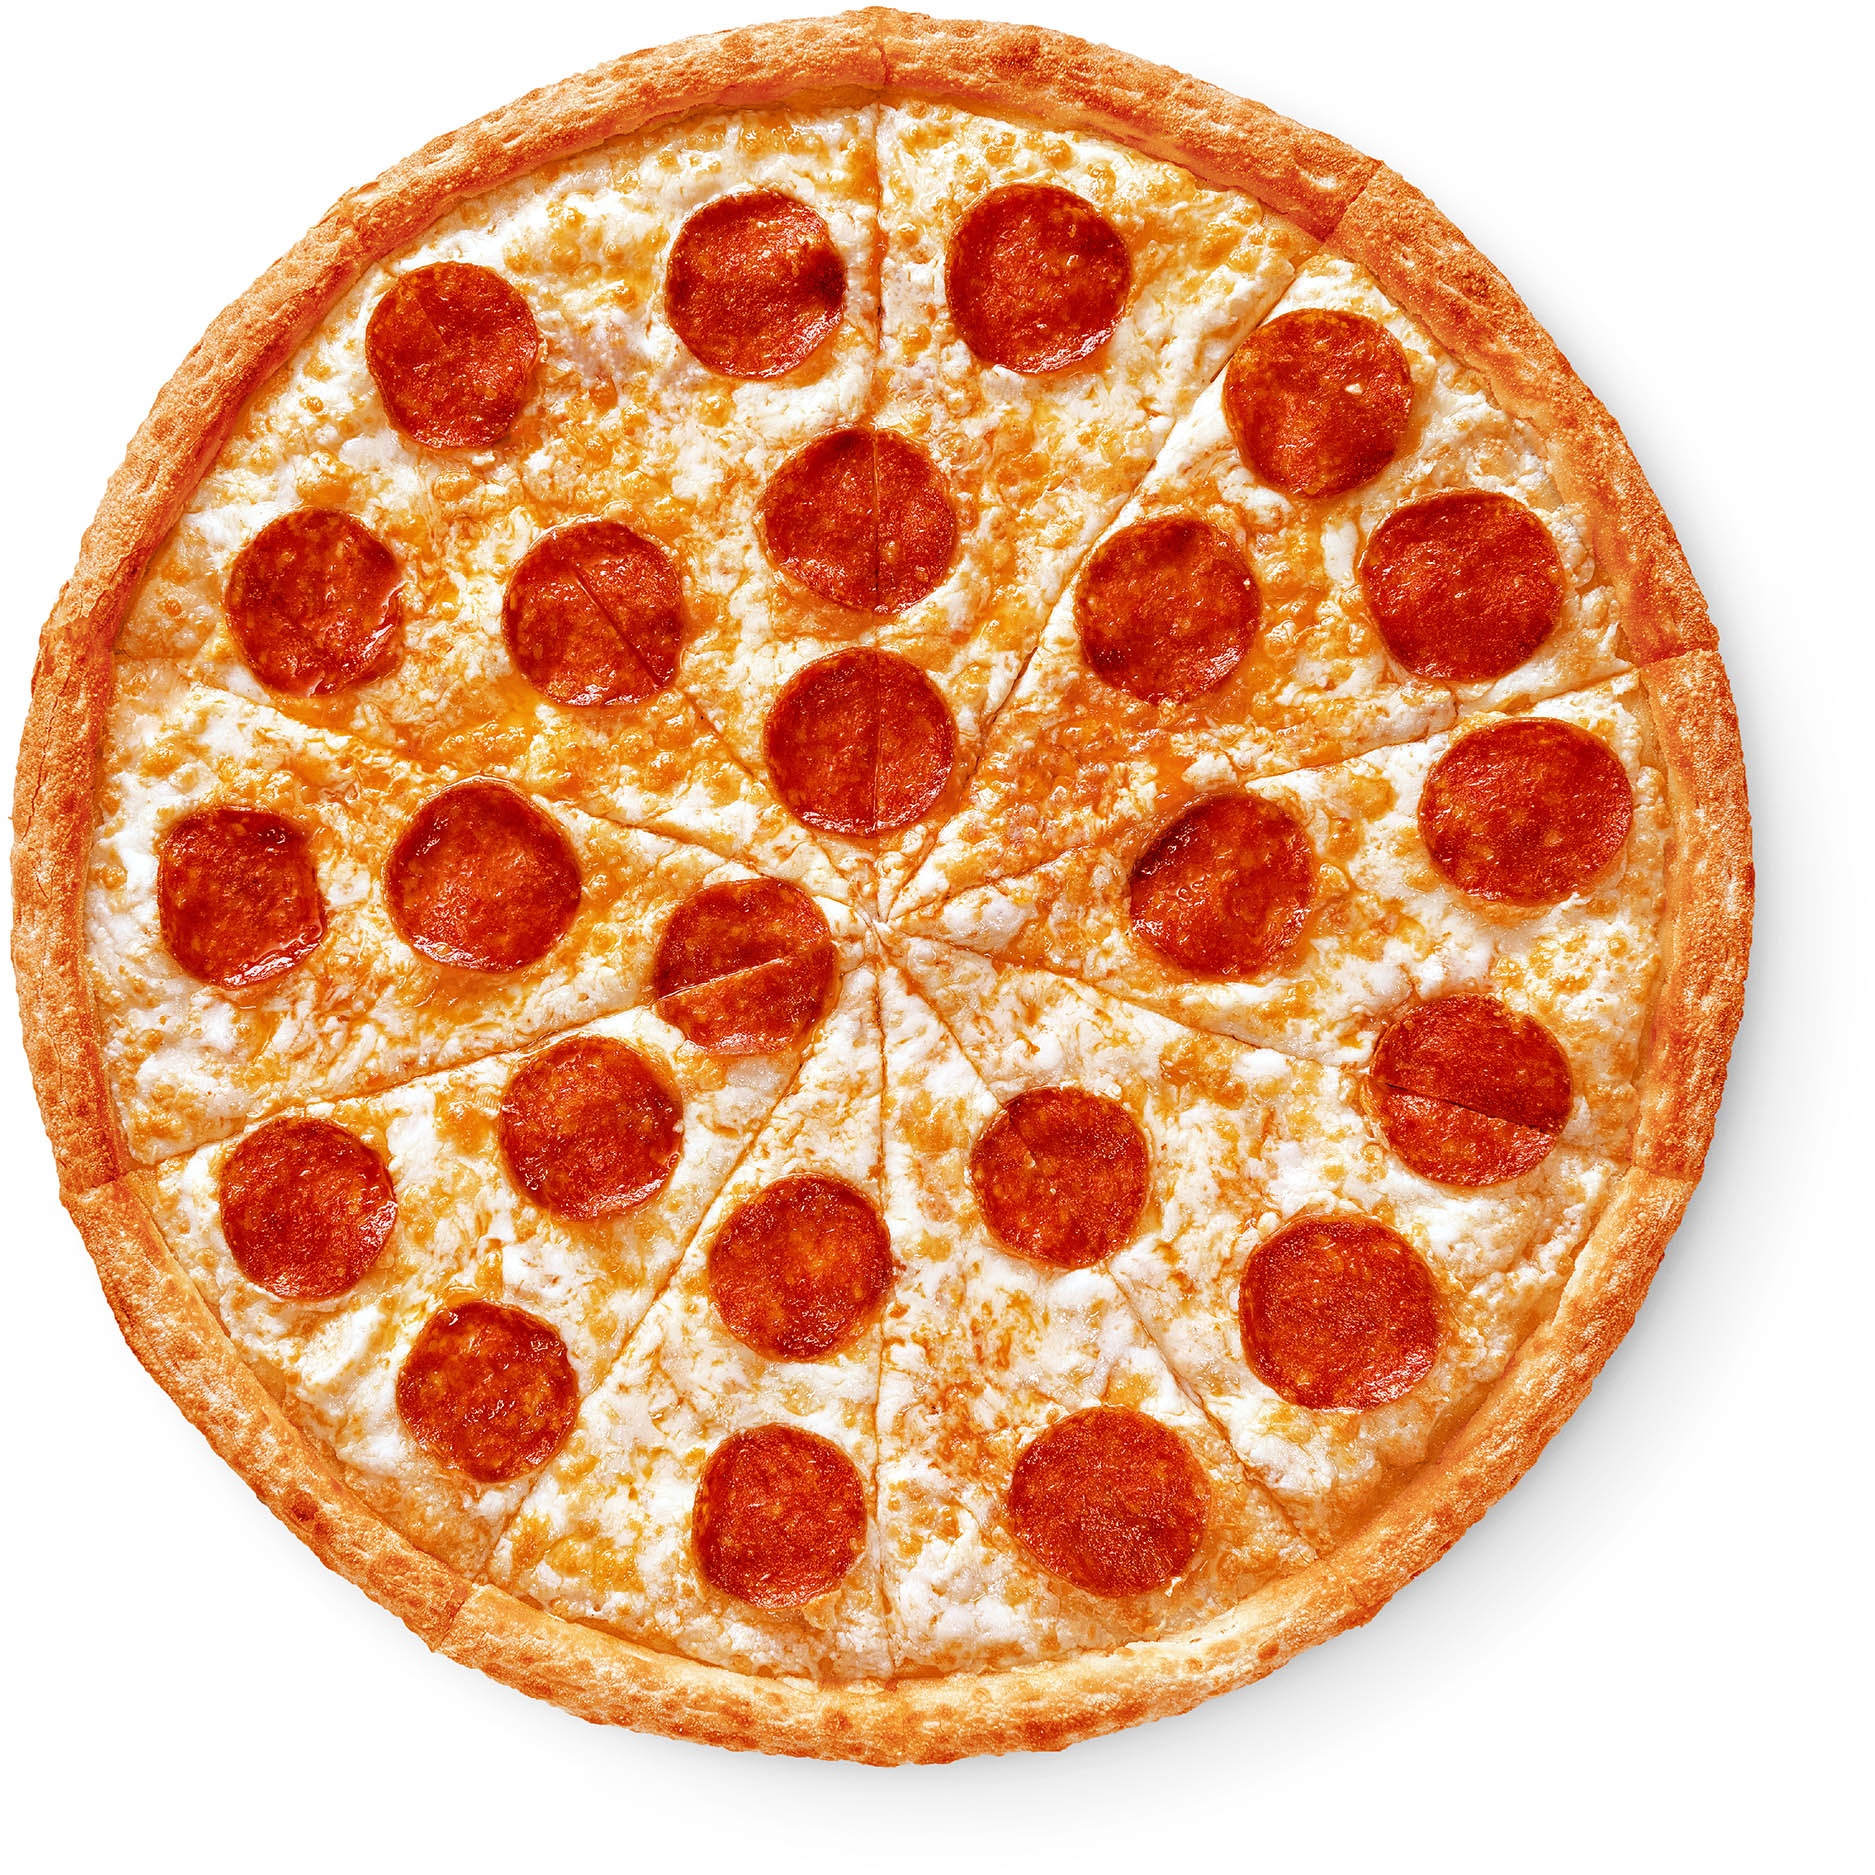 сколько стоит большая пицца пепперони фото 7